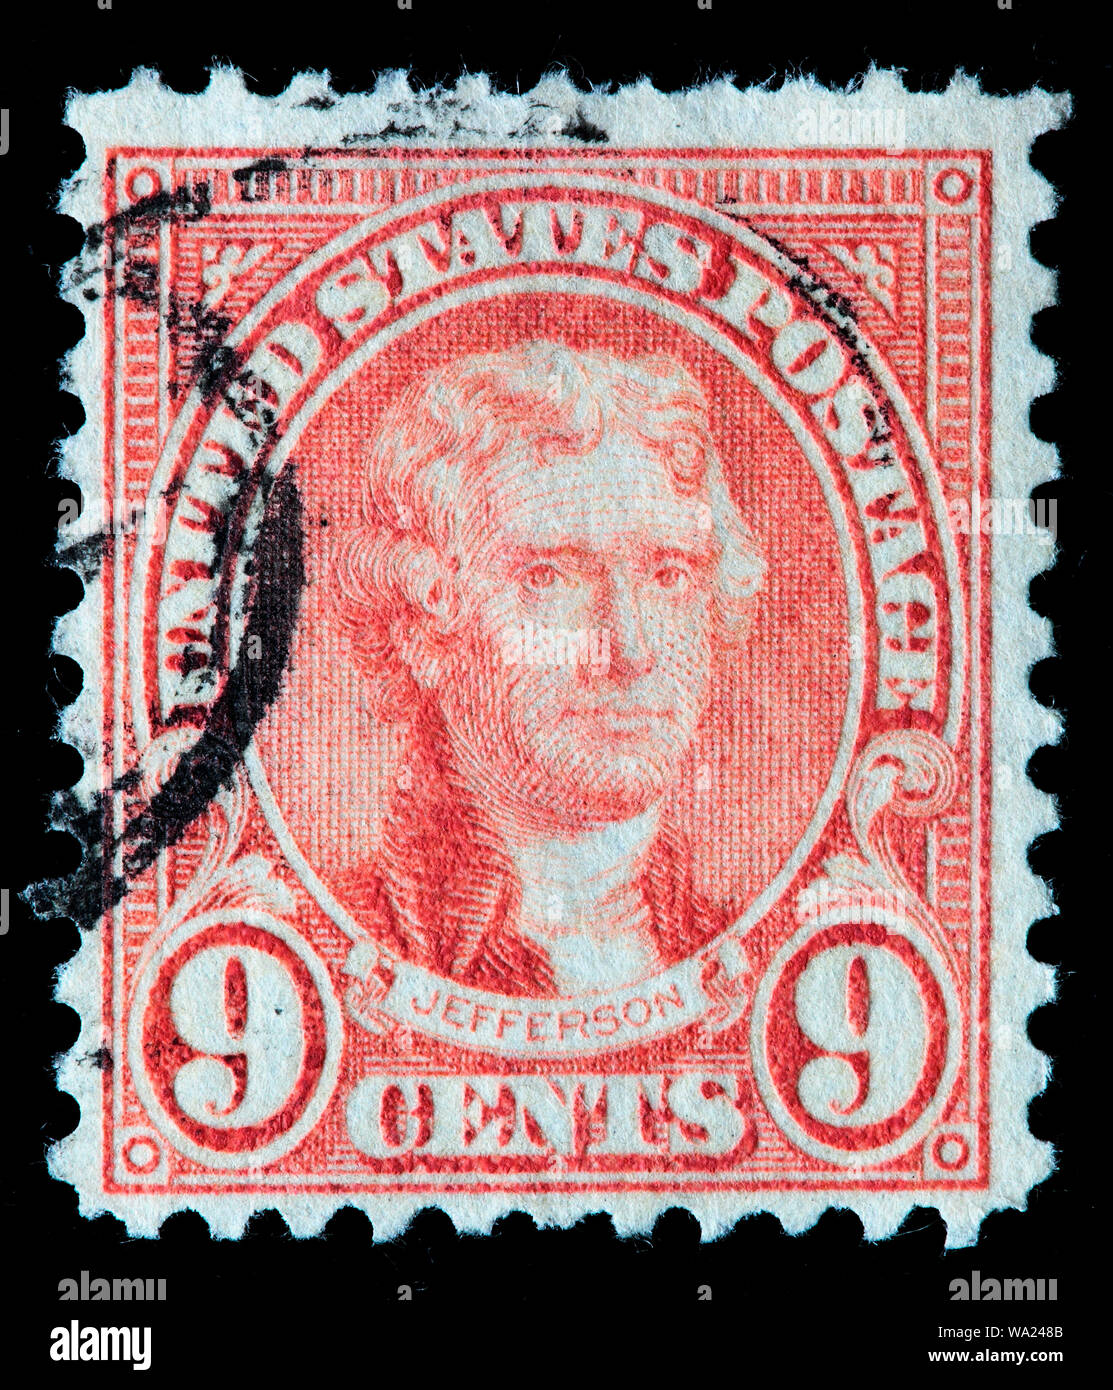 Thomas Jefferson (1743-1826), President of USA, postage stamp, USA, 1923 Stock Photo